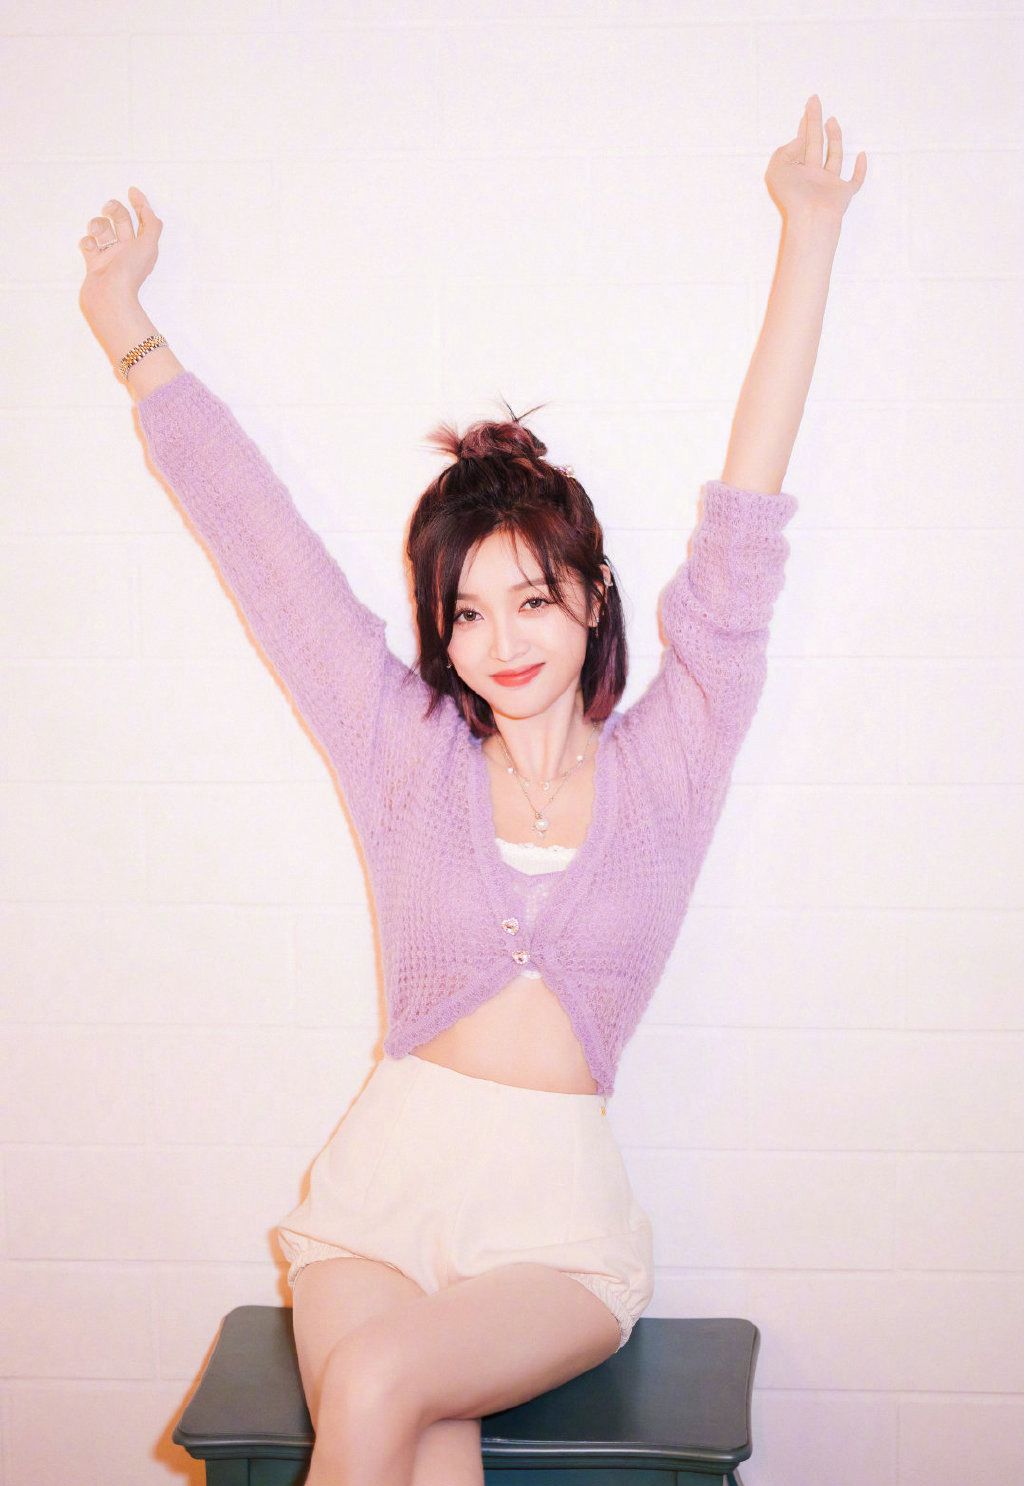 吴宣仪紫色针织开衫搭配白色短裤甜美率真写真图片